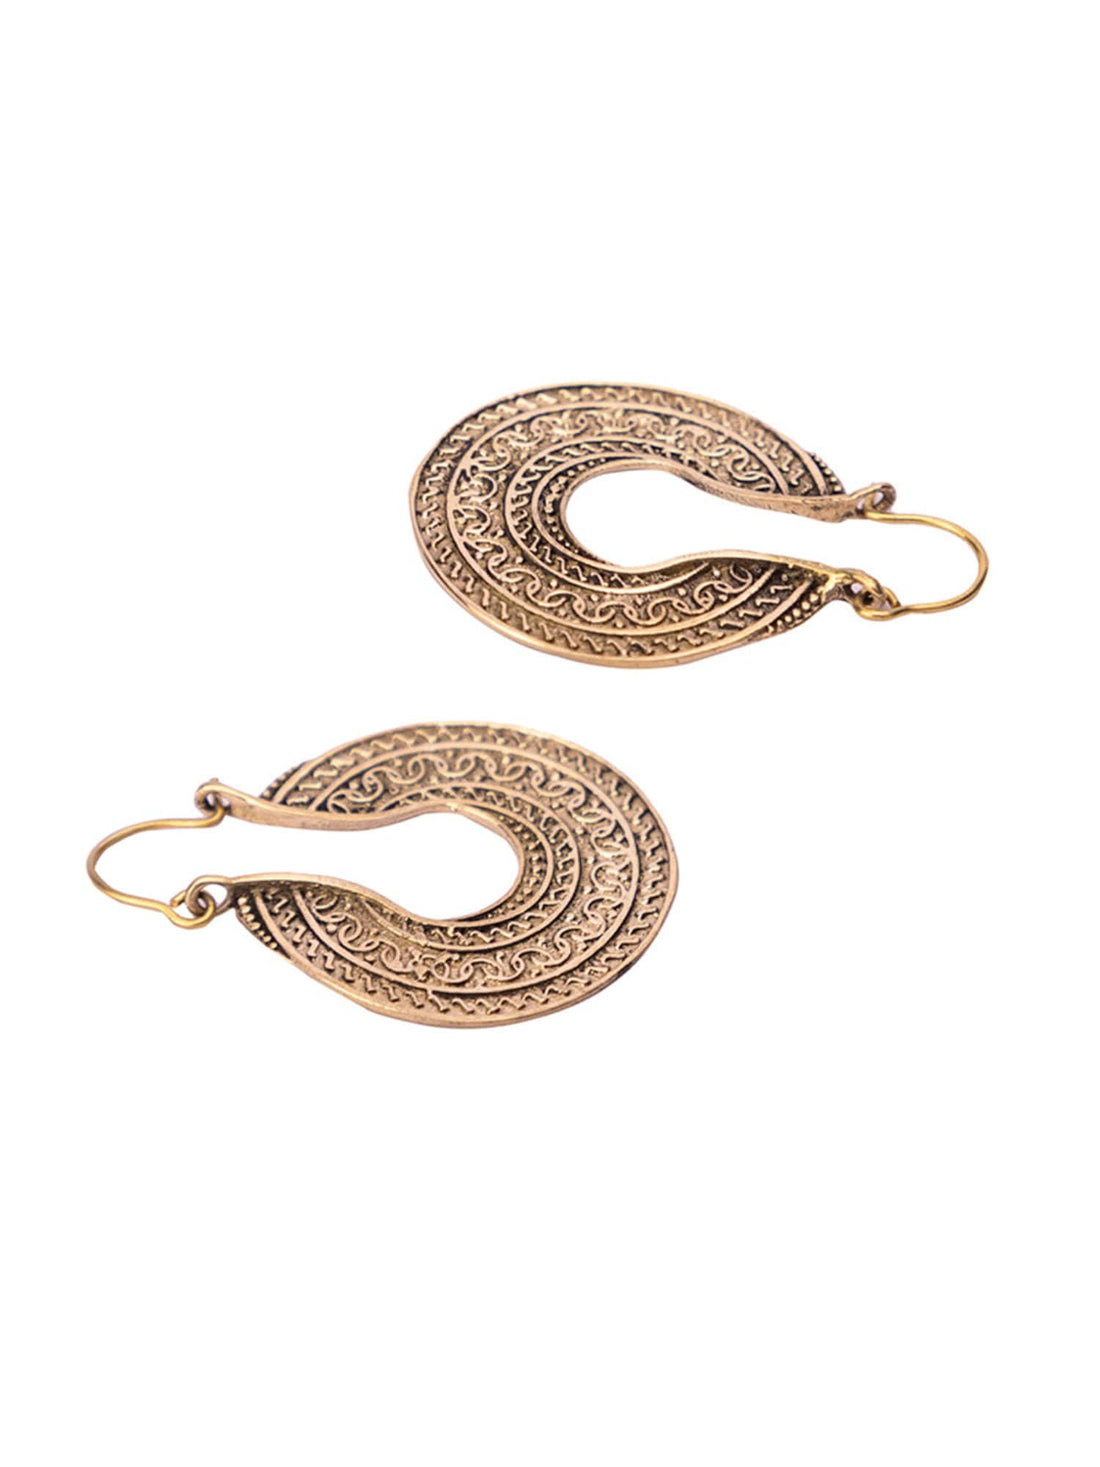 Festive Wear Chandbaalis Earrings - Traditional Gold-Plated Brass Earrings By Studio One Love